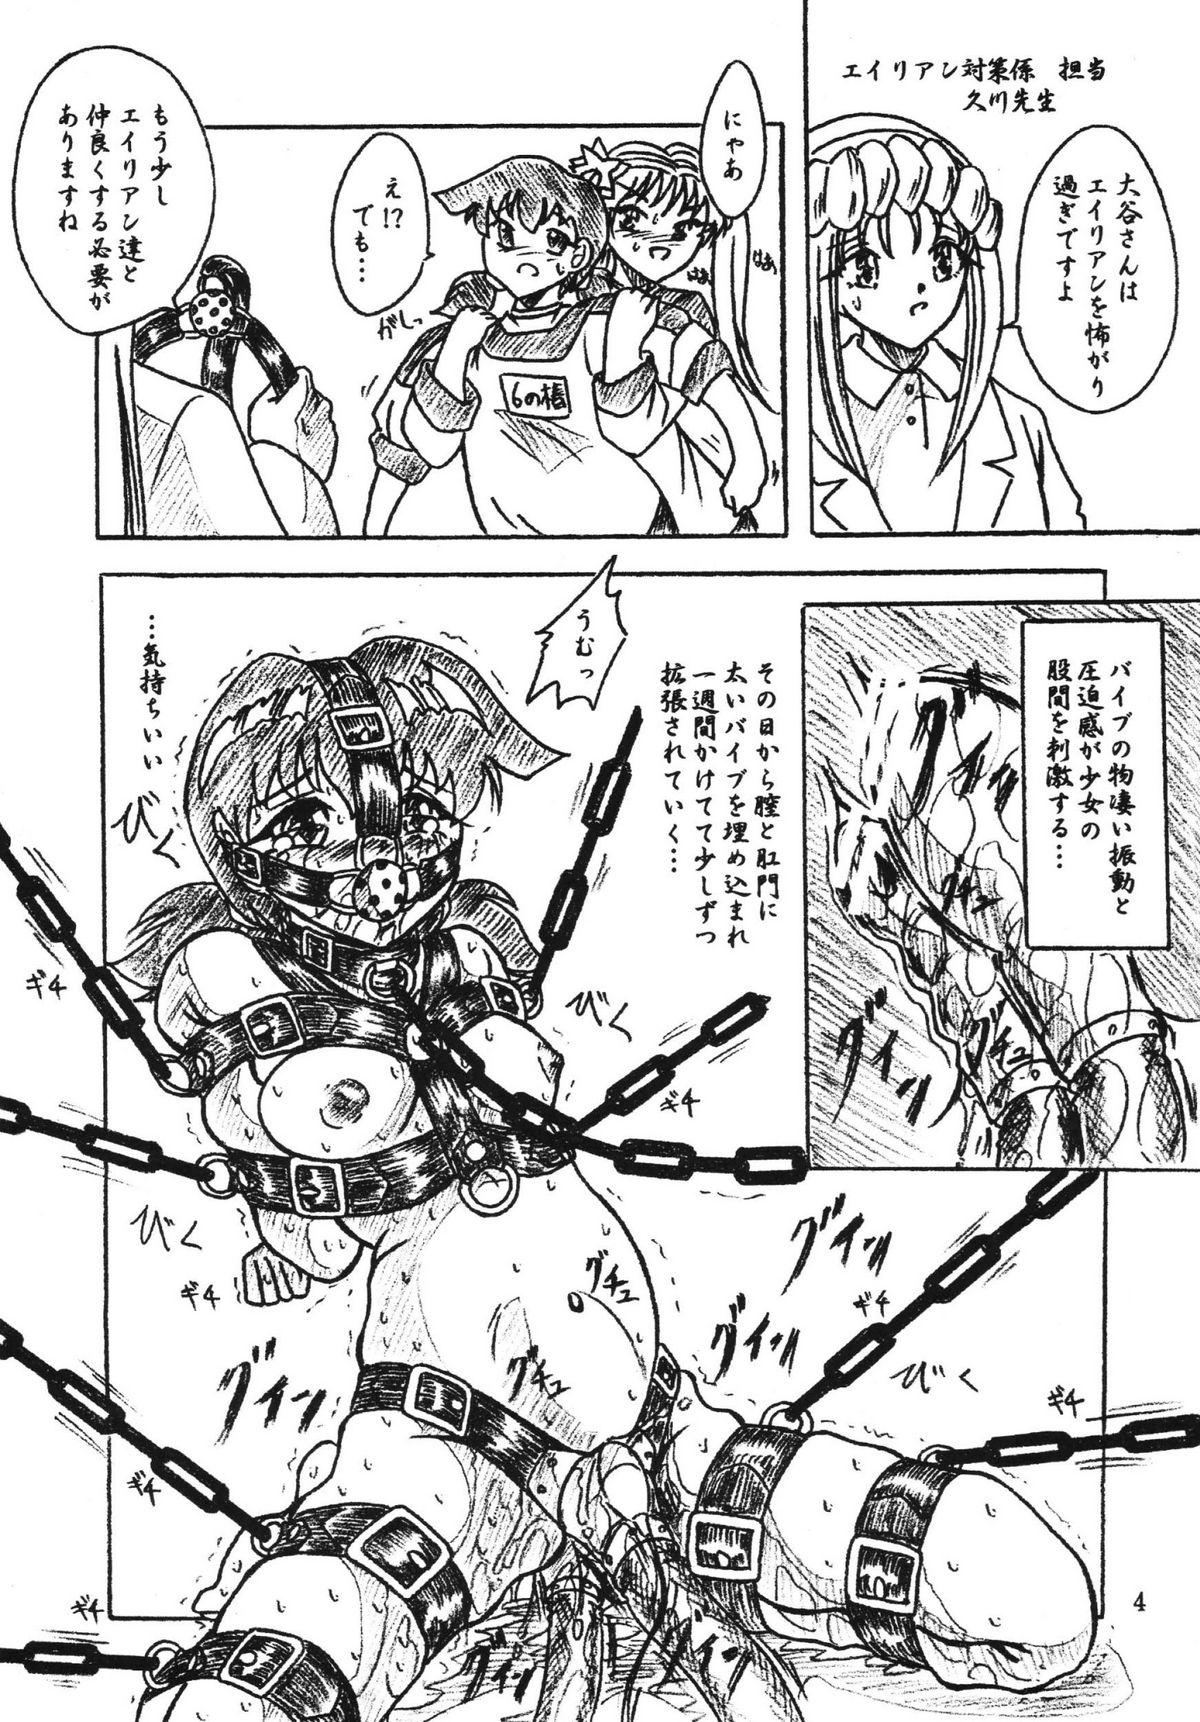 Blacksonboys Vivian Bessatsu Soushuuhen 2 Ichigo Hakusho - Mahoromatic Alien 9 Strip - Page 4